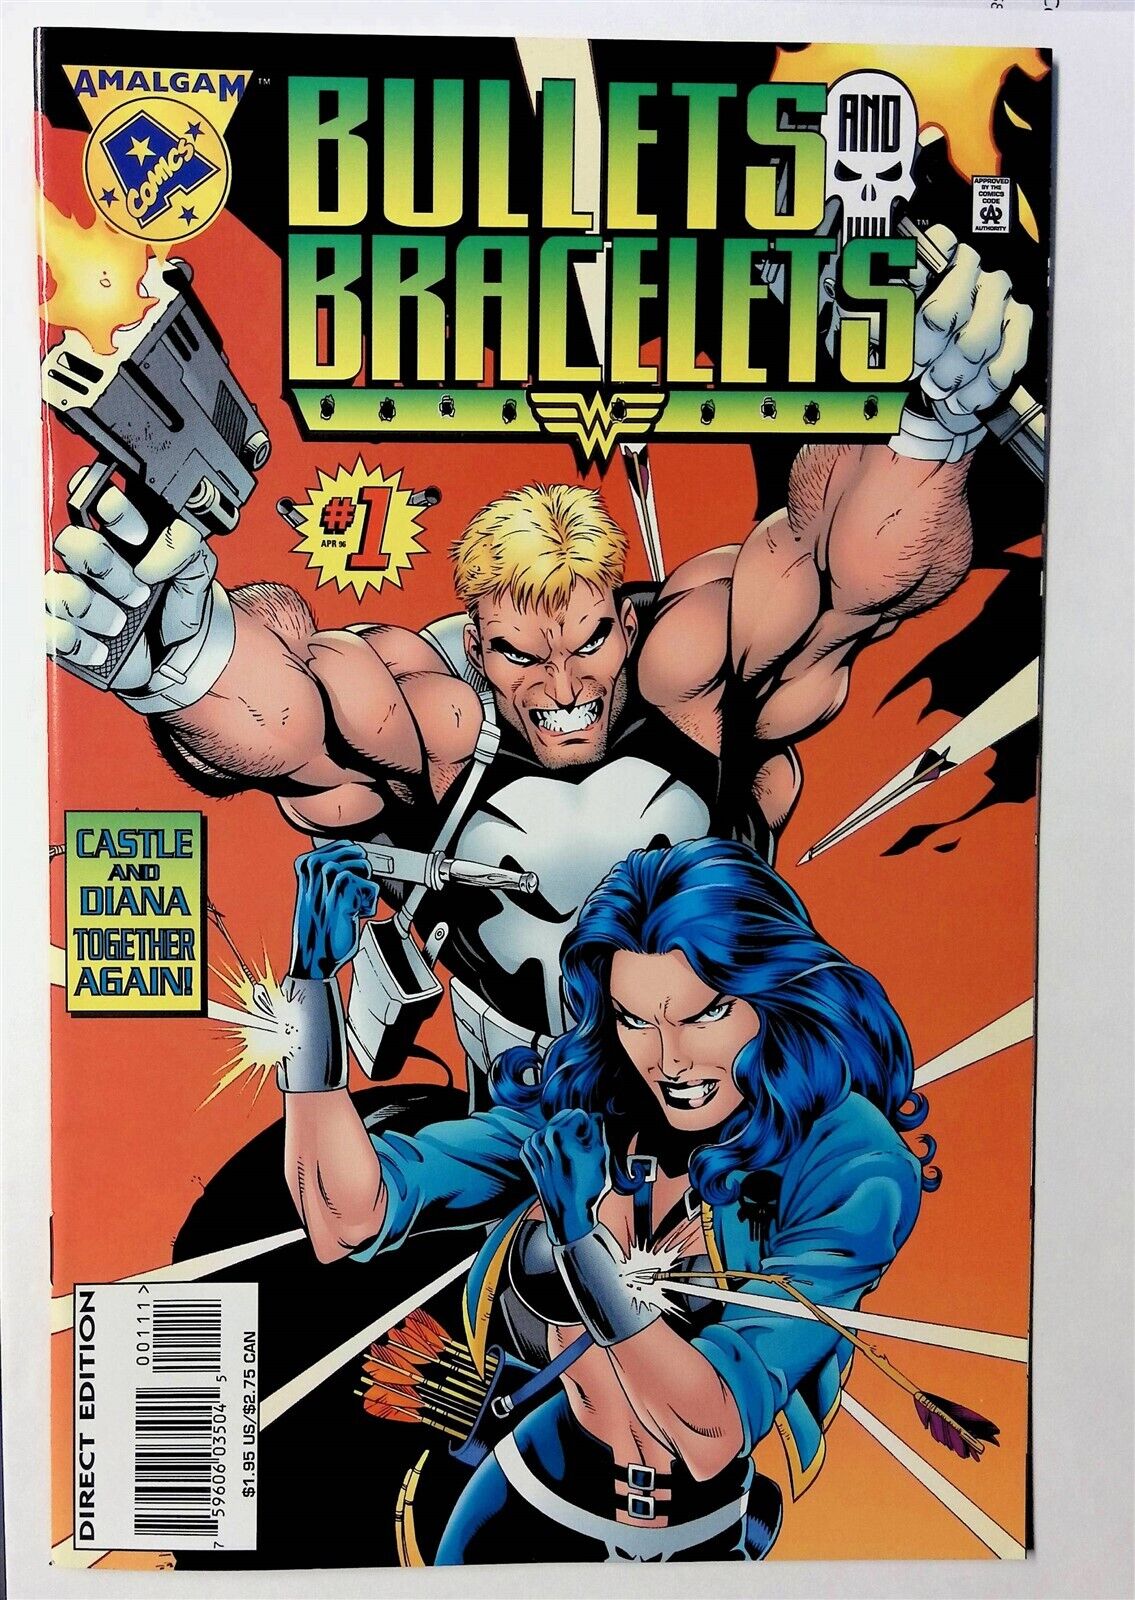 Bullets and Bracelets #1 (Apr 1996, Marvel) FN+